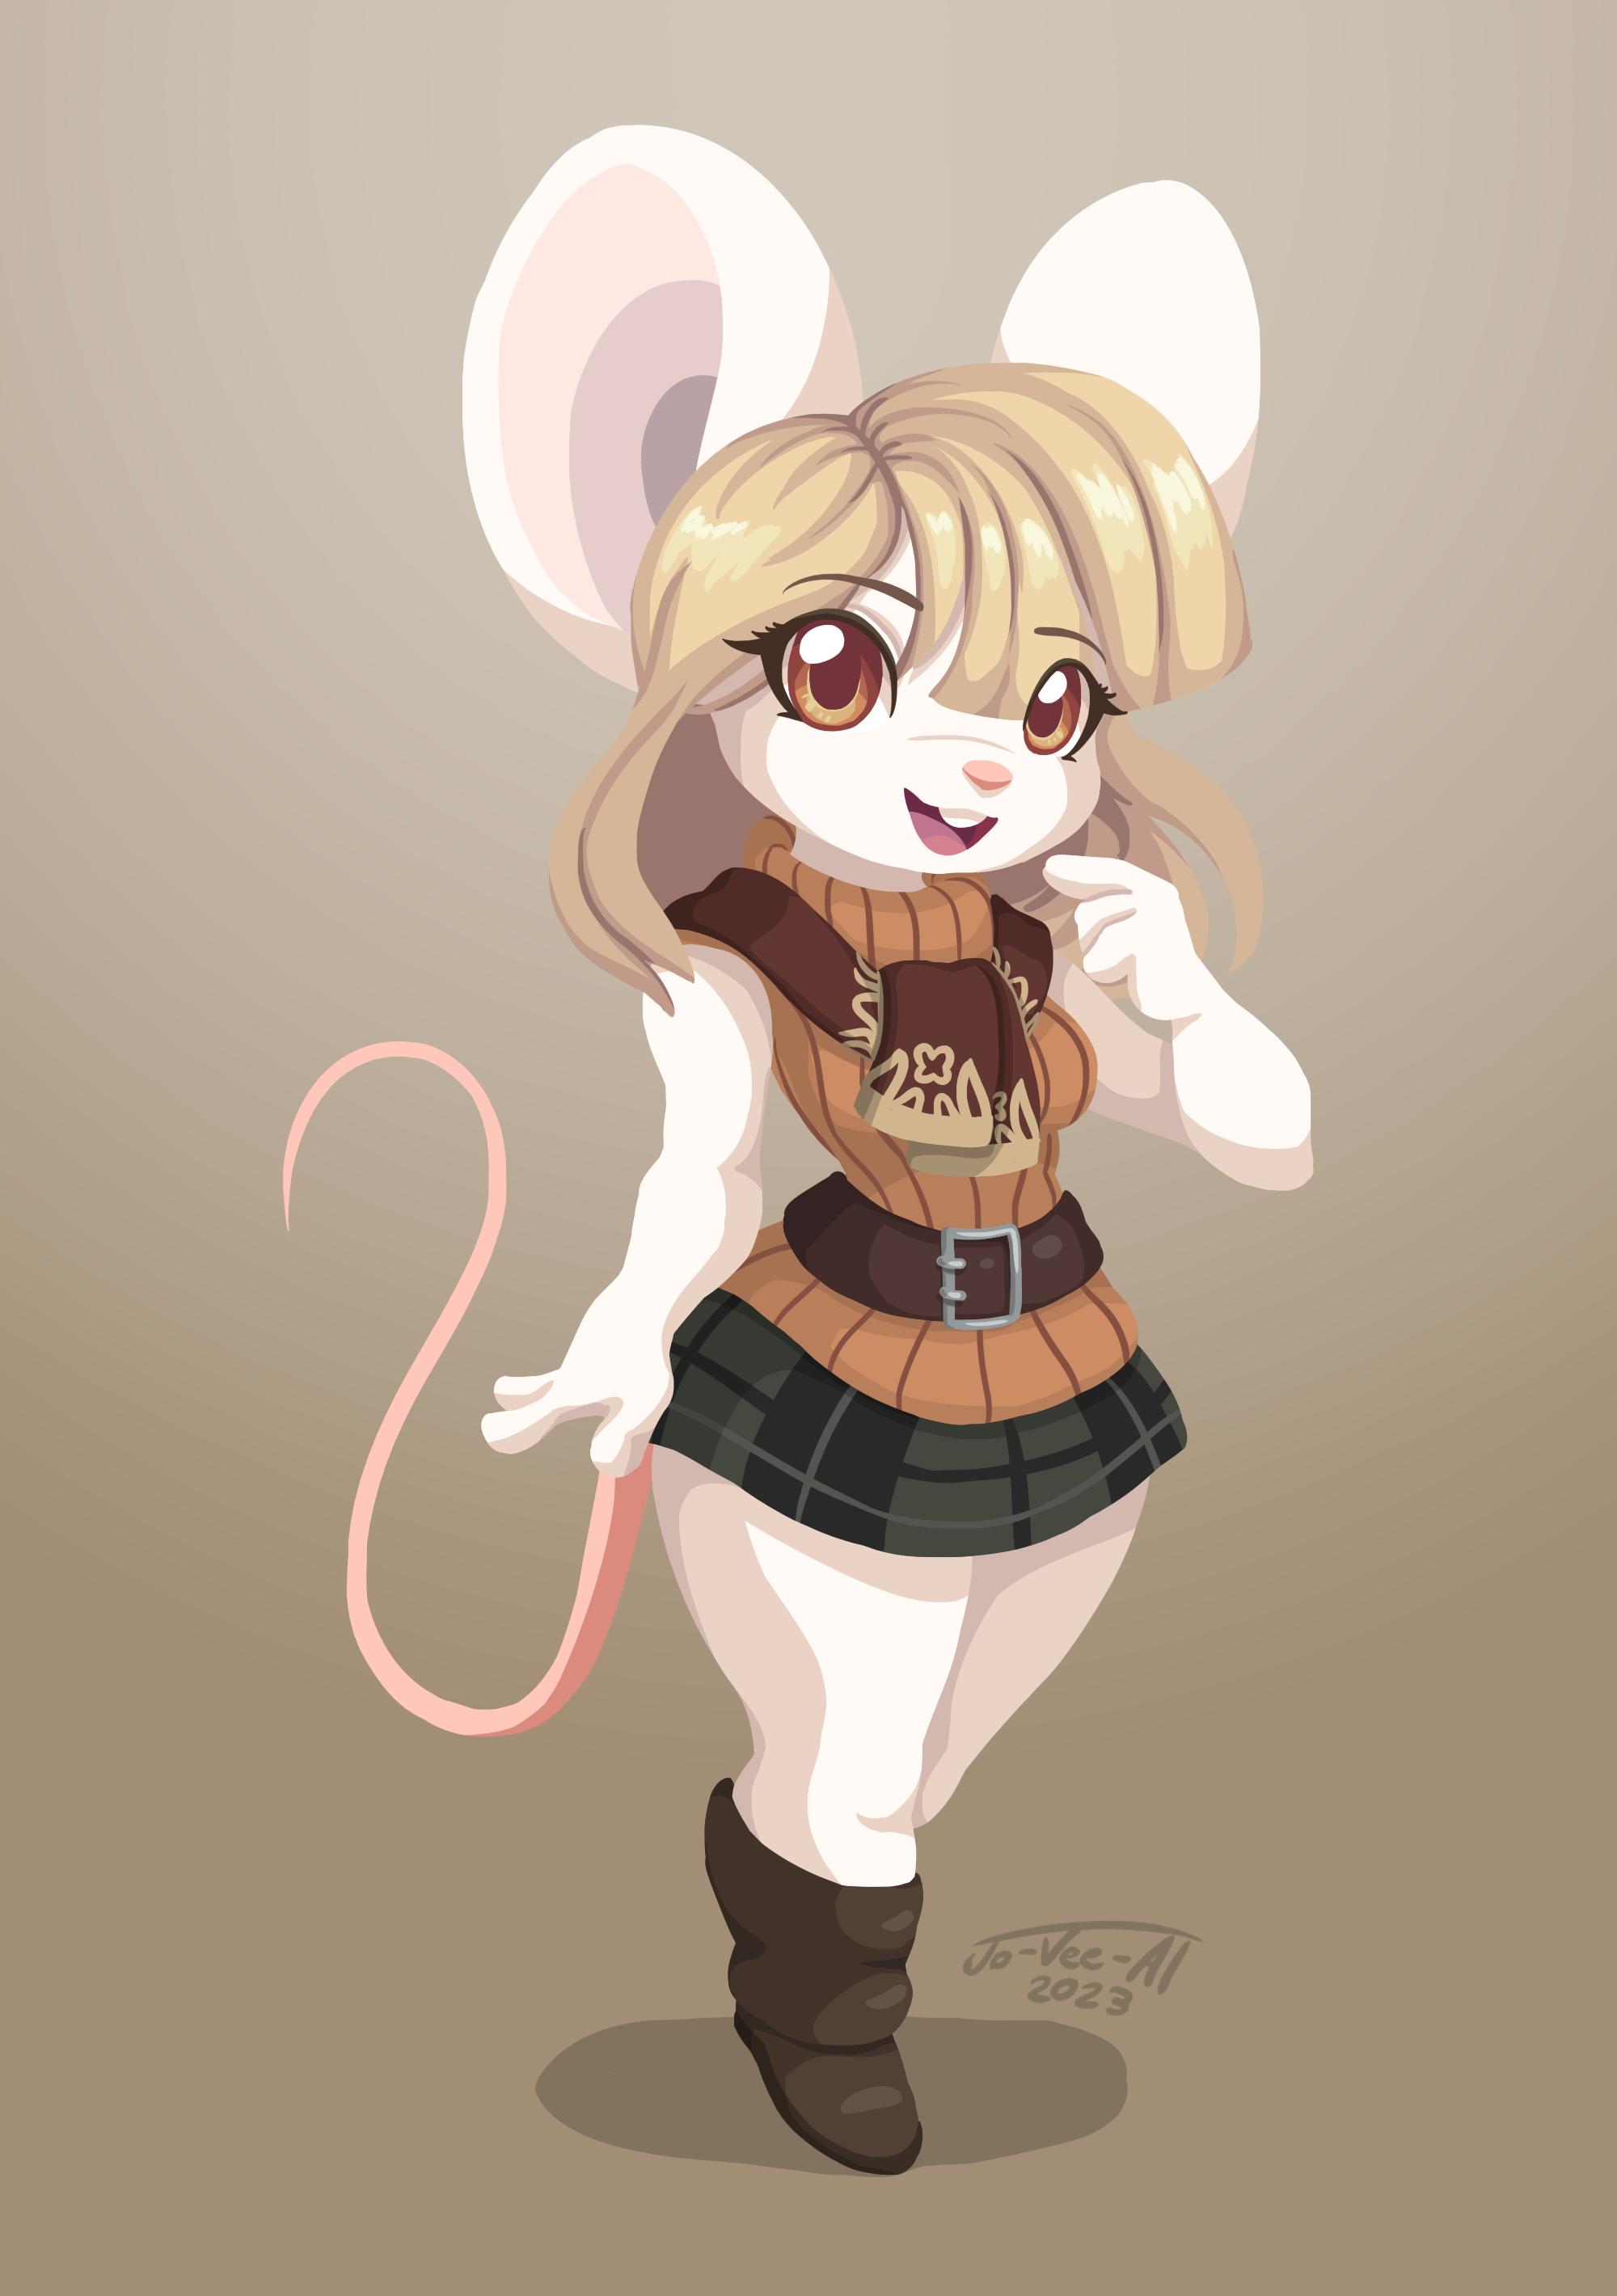 Tiny Mouse Ashley by JamoART on DeviantArt